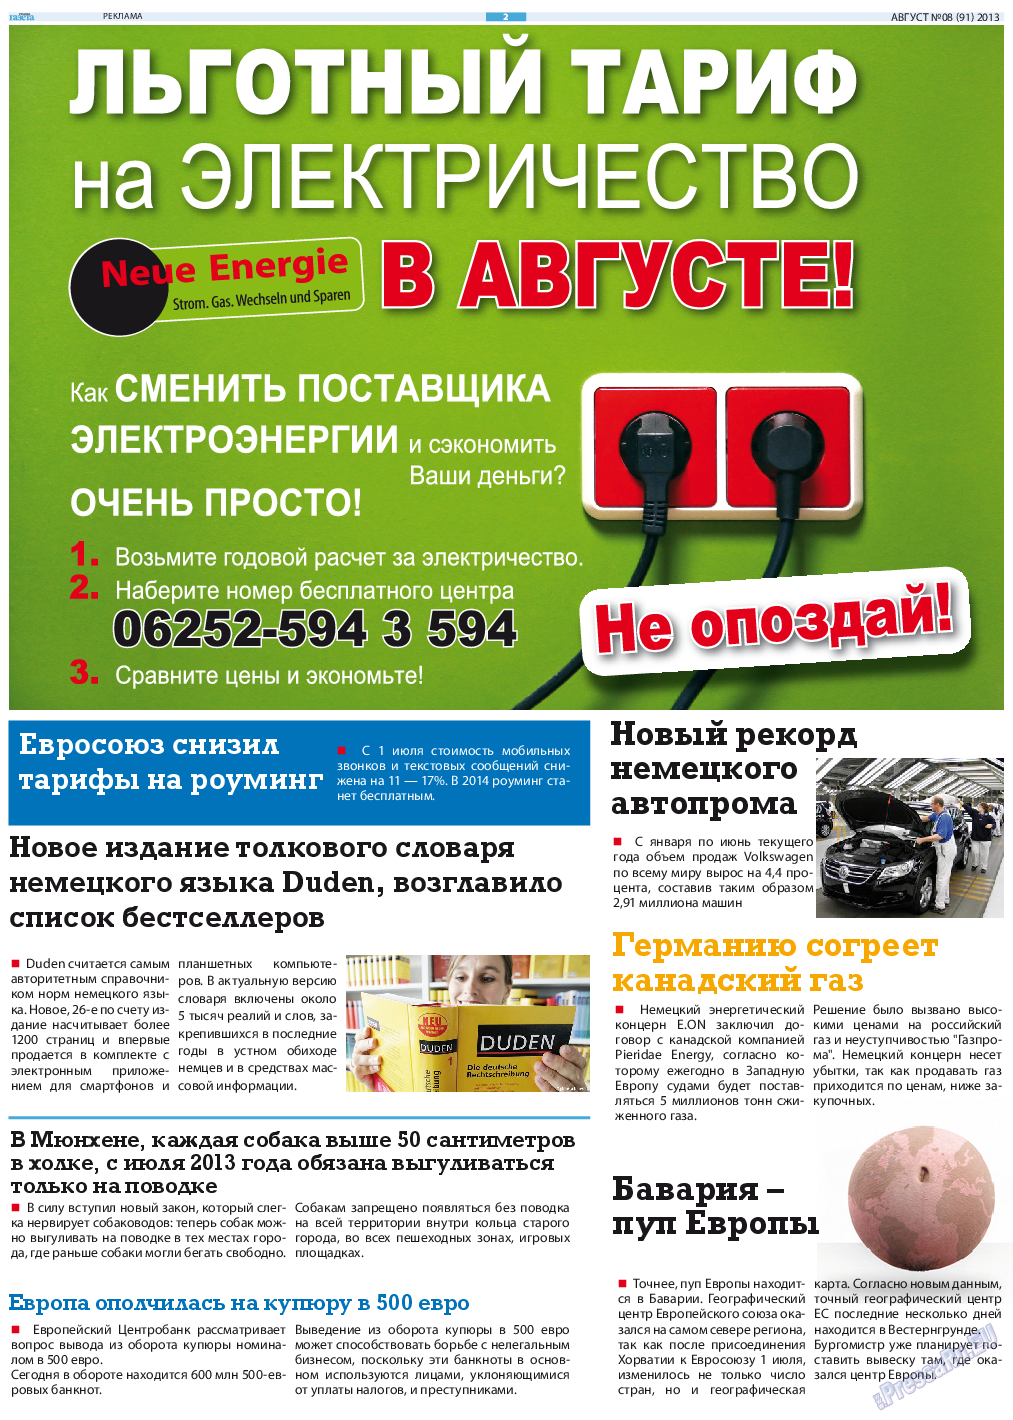 Русская Газета (газета). 2013 год, номер 8, стр. 2